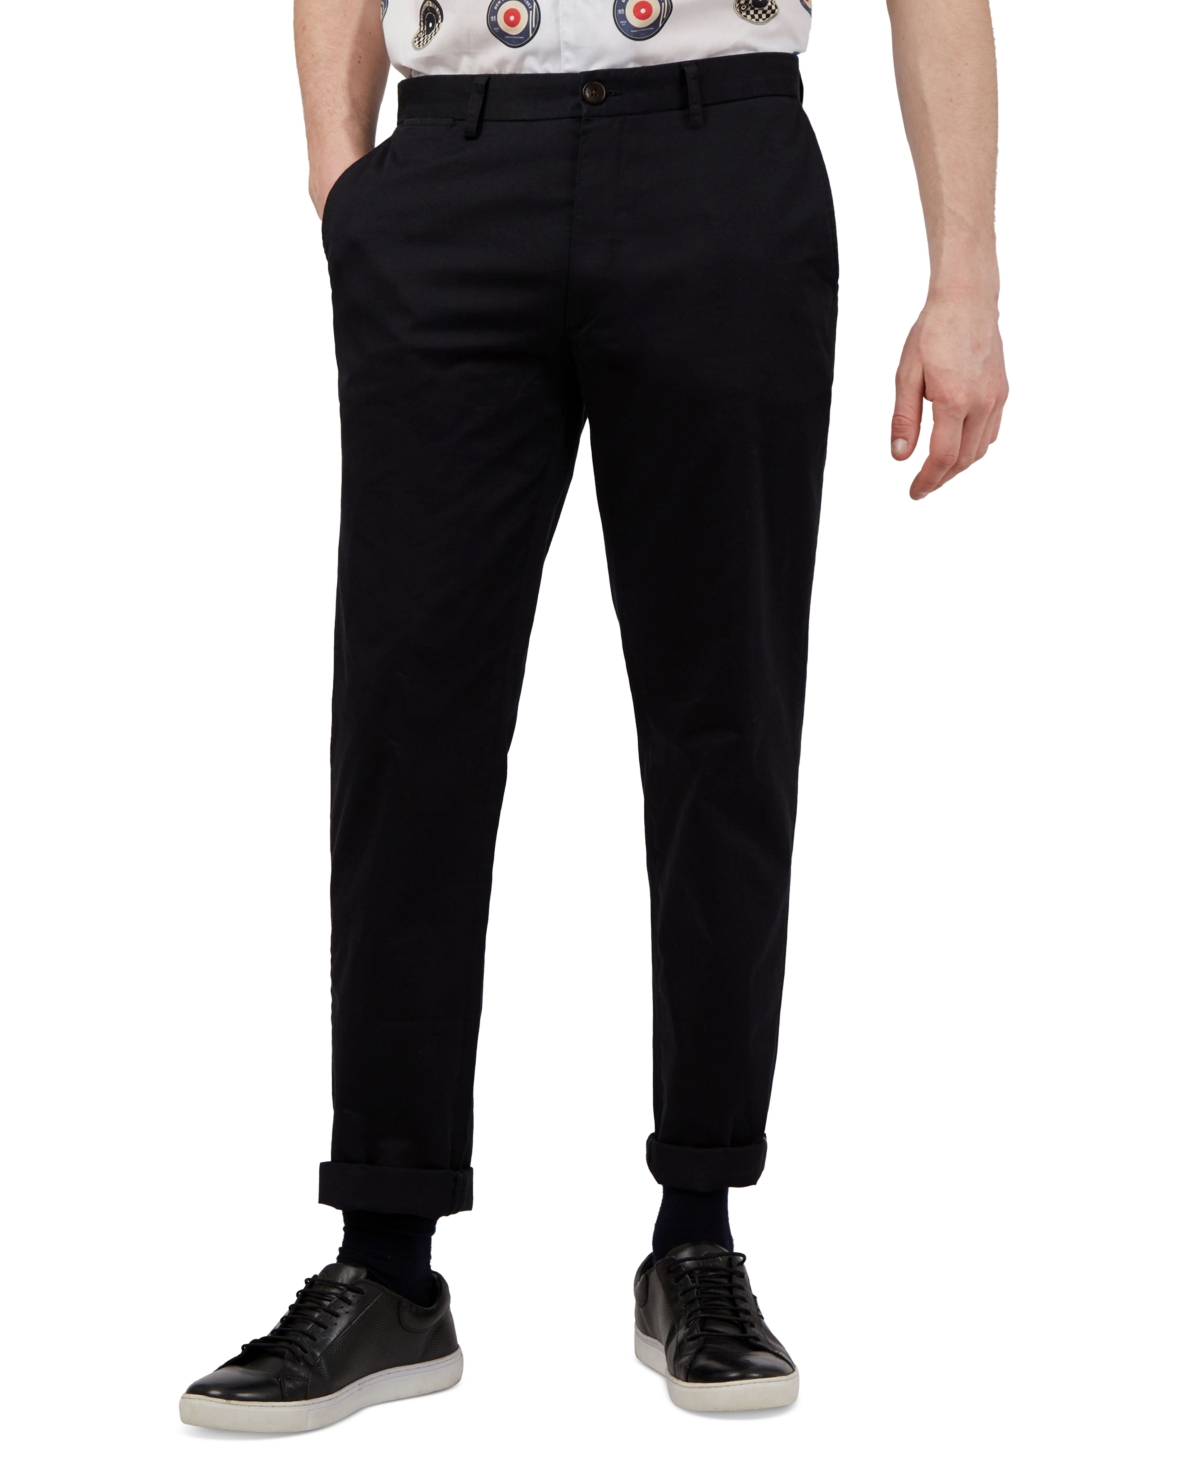 Ben Sherman Men's Slim-fit Stretch Five-pocket Branded Chino Pants In Black